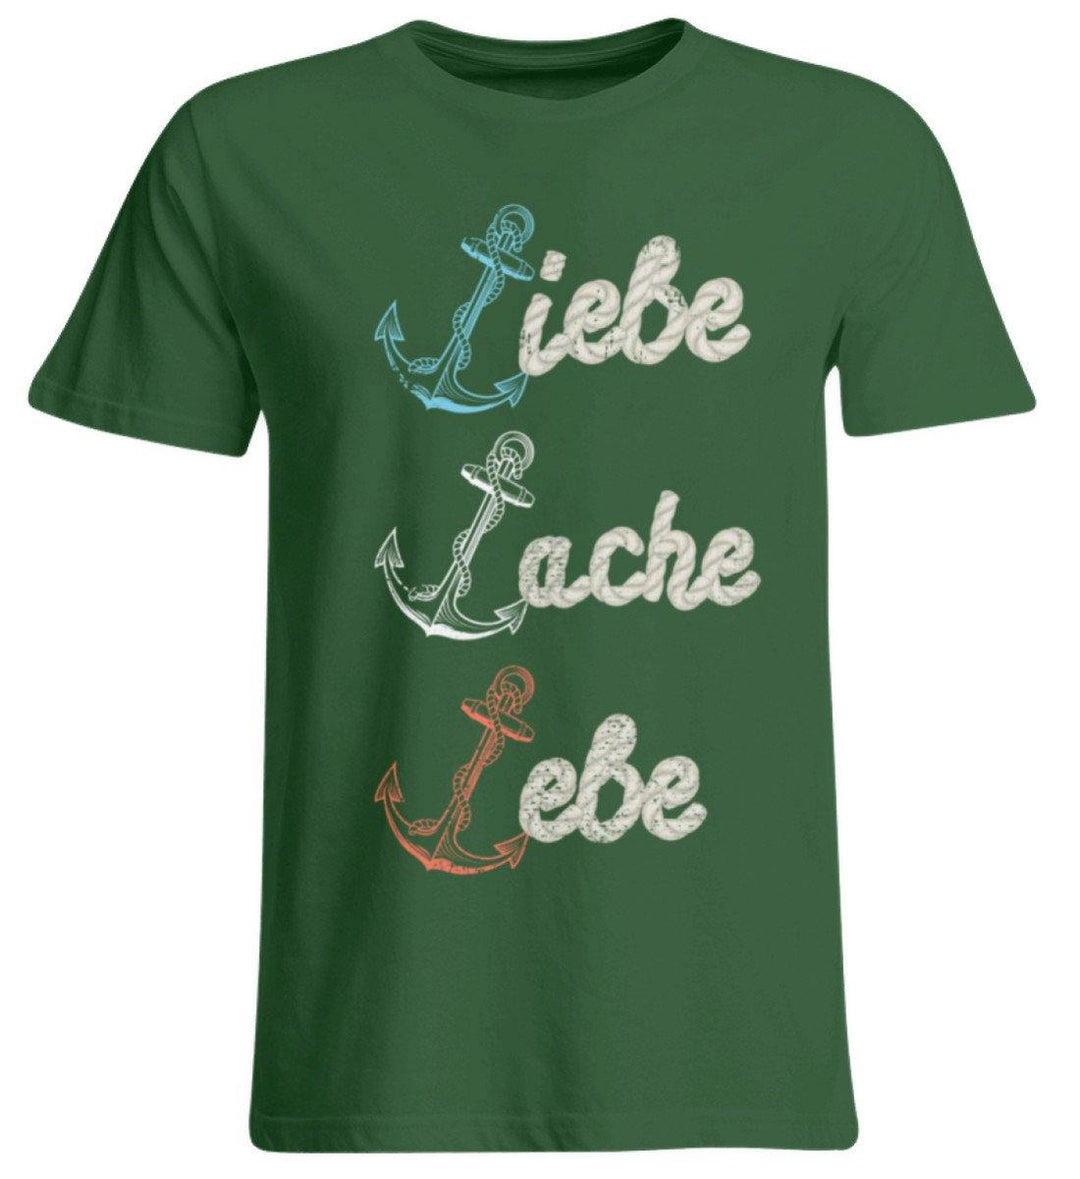 Liebe Lache Lebe - Norddeutsch   - Übergrößenshirt - Words on Shirts Sag es mit dem Mittelfinger Shirts Hoodies Sweatshirt Taschen Gymsack Spruch Sprüche Statement